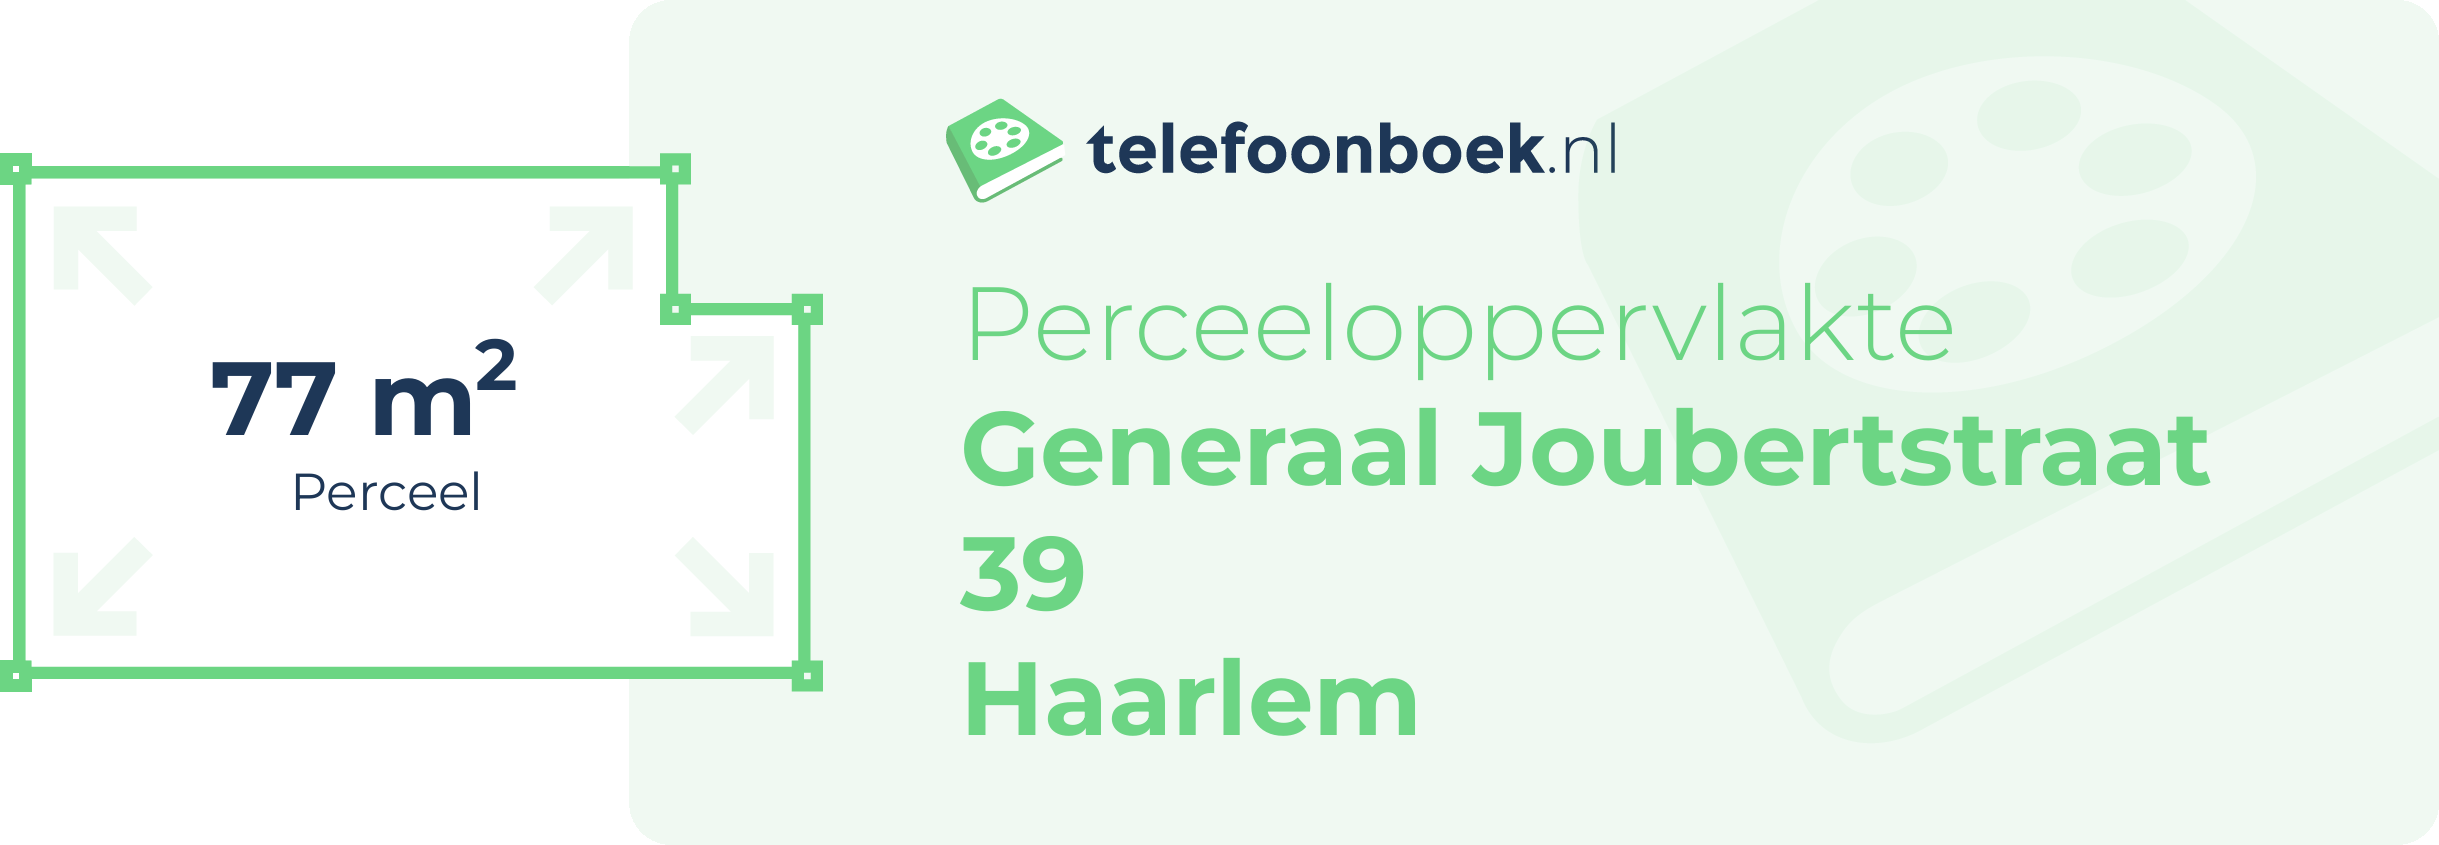 Perceeloppervlakte Generaal Joubertstraat 39 Haarlem